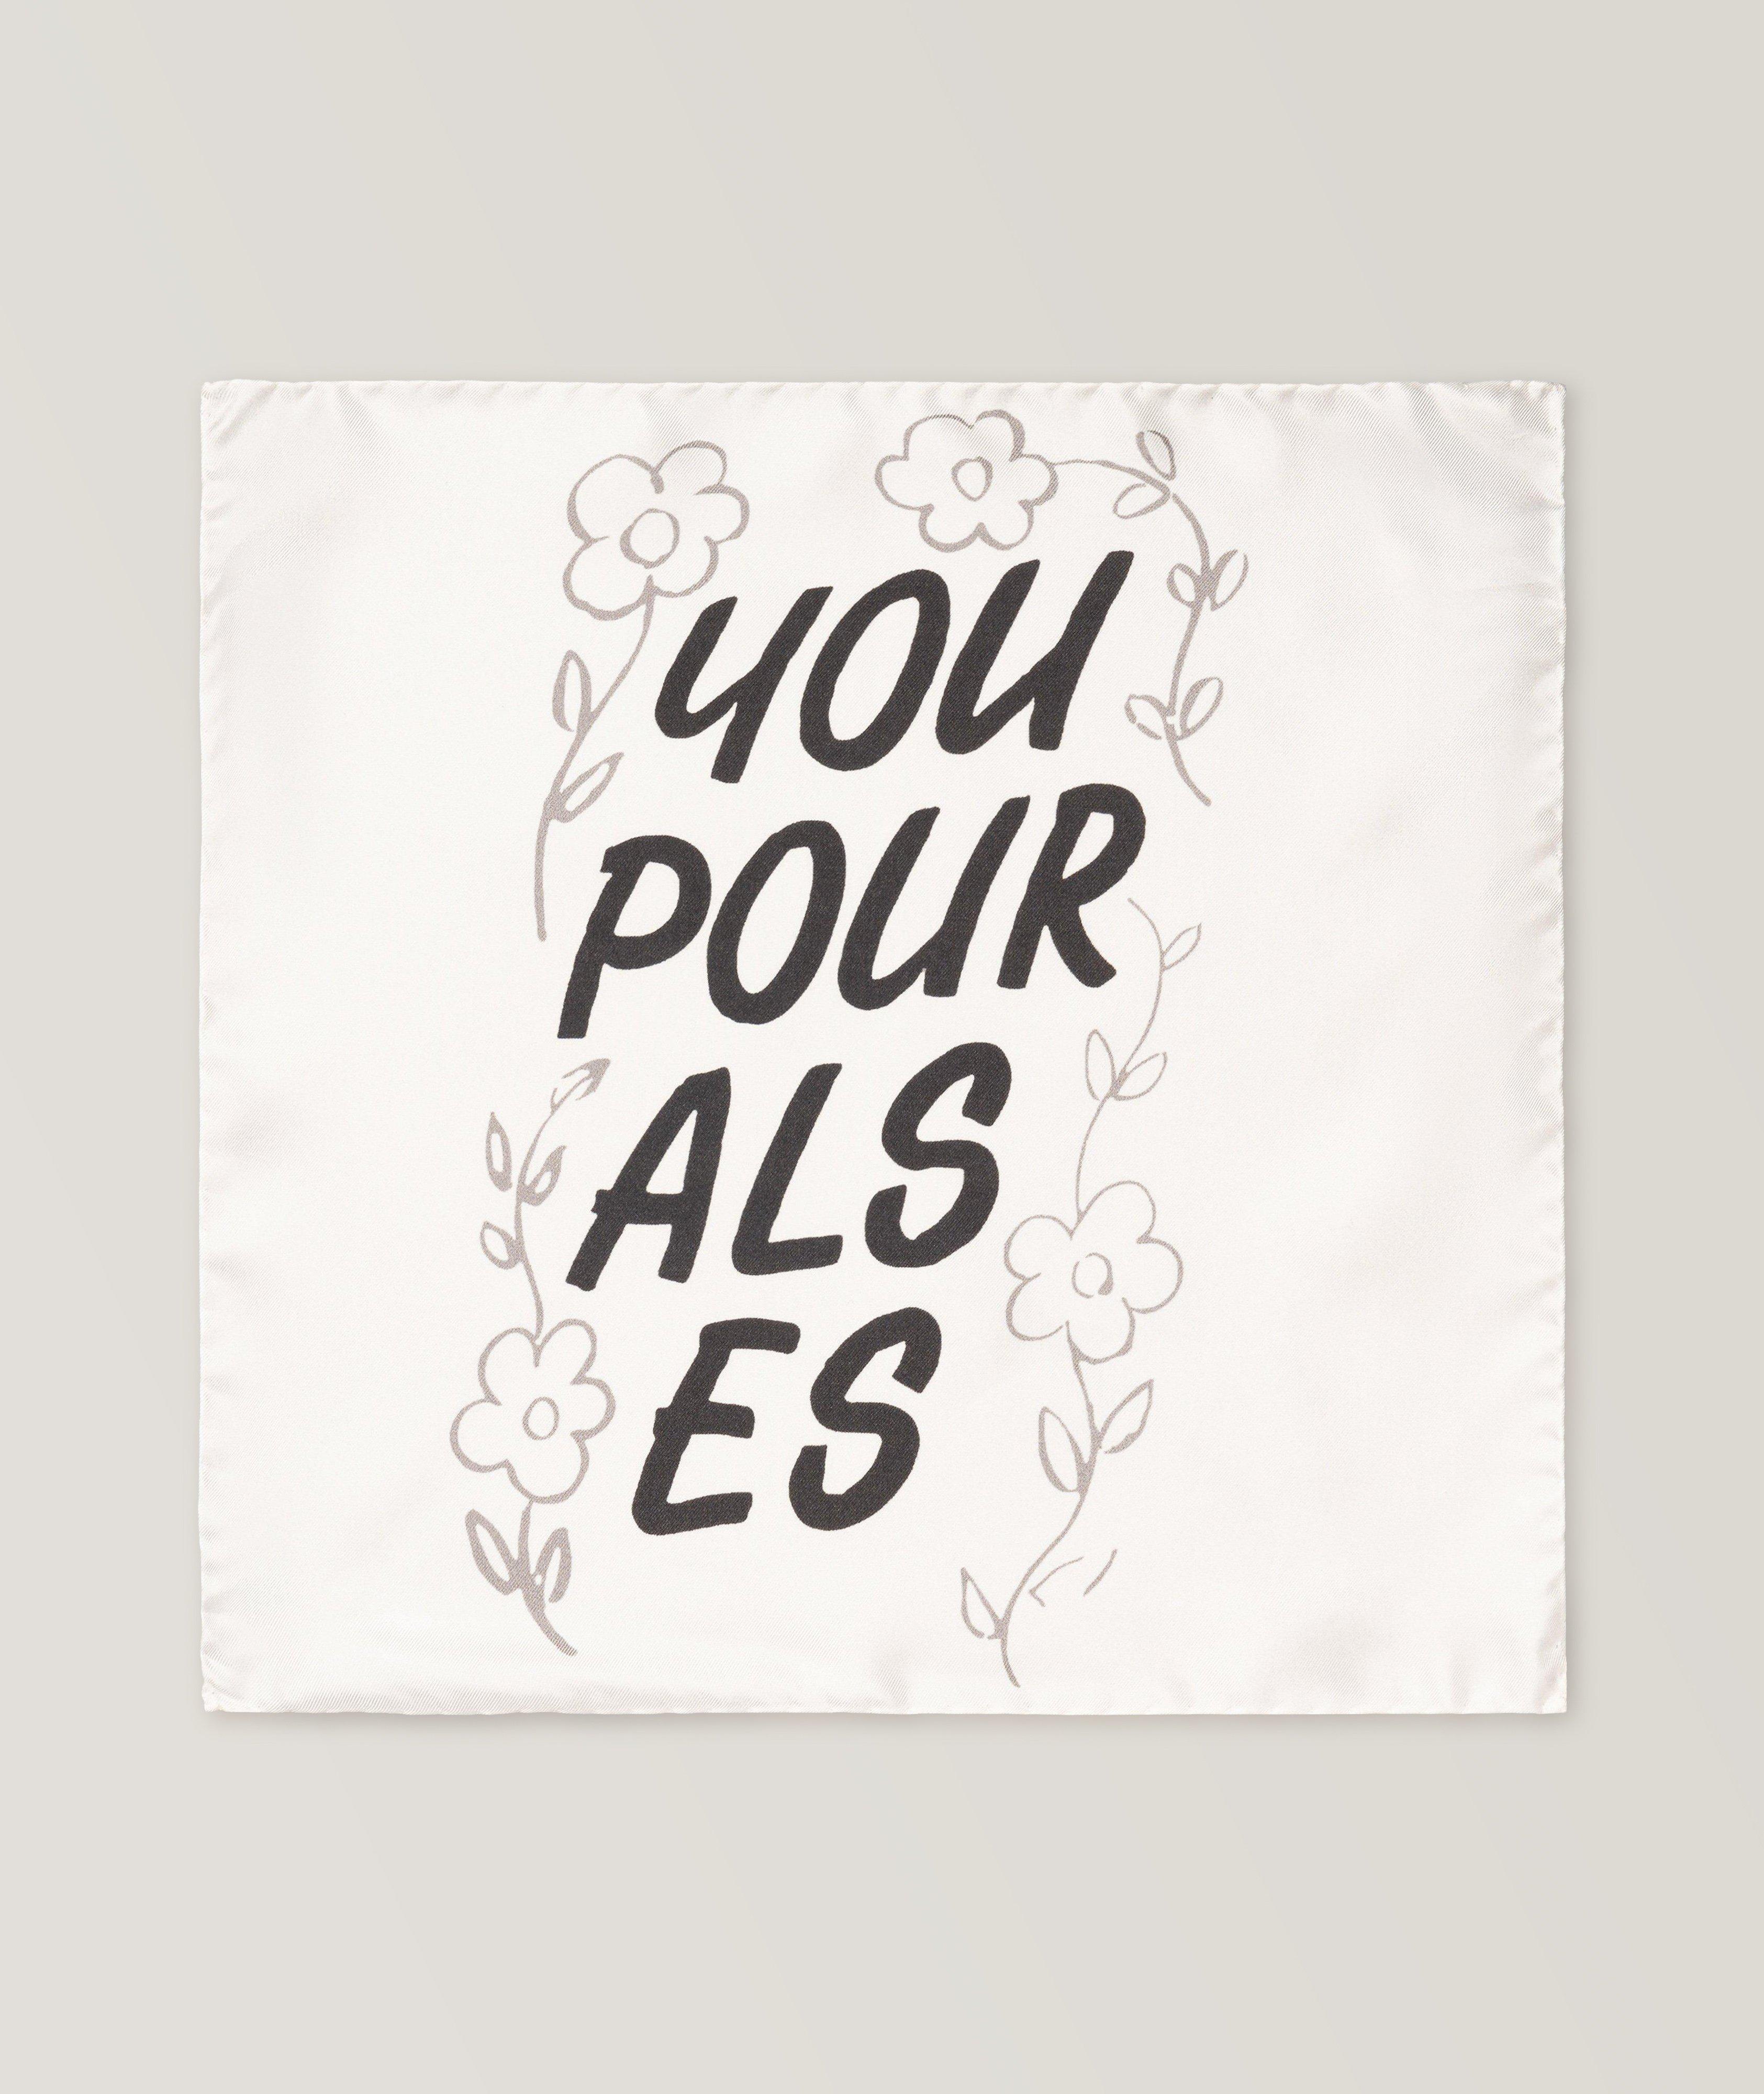 Mouchoir de poche « You Pour Als Es », collection The Beatles image 0